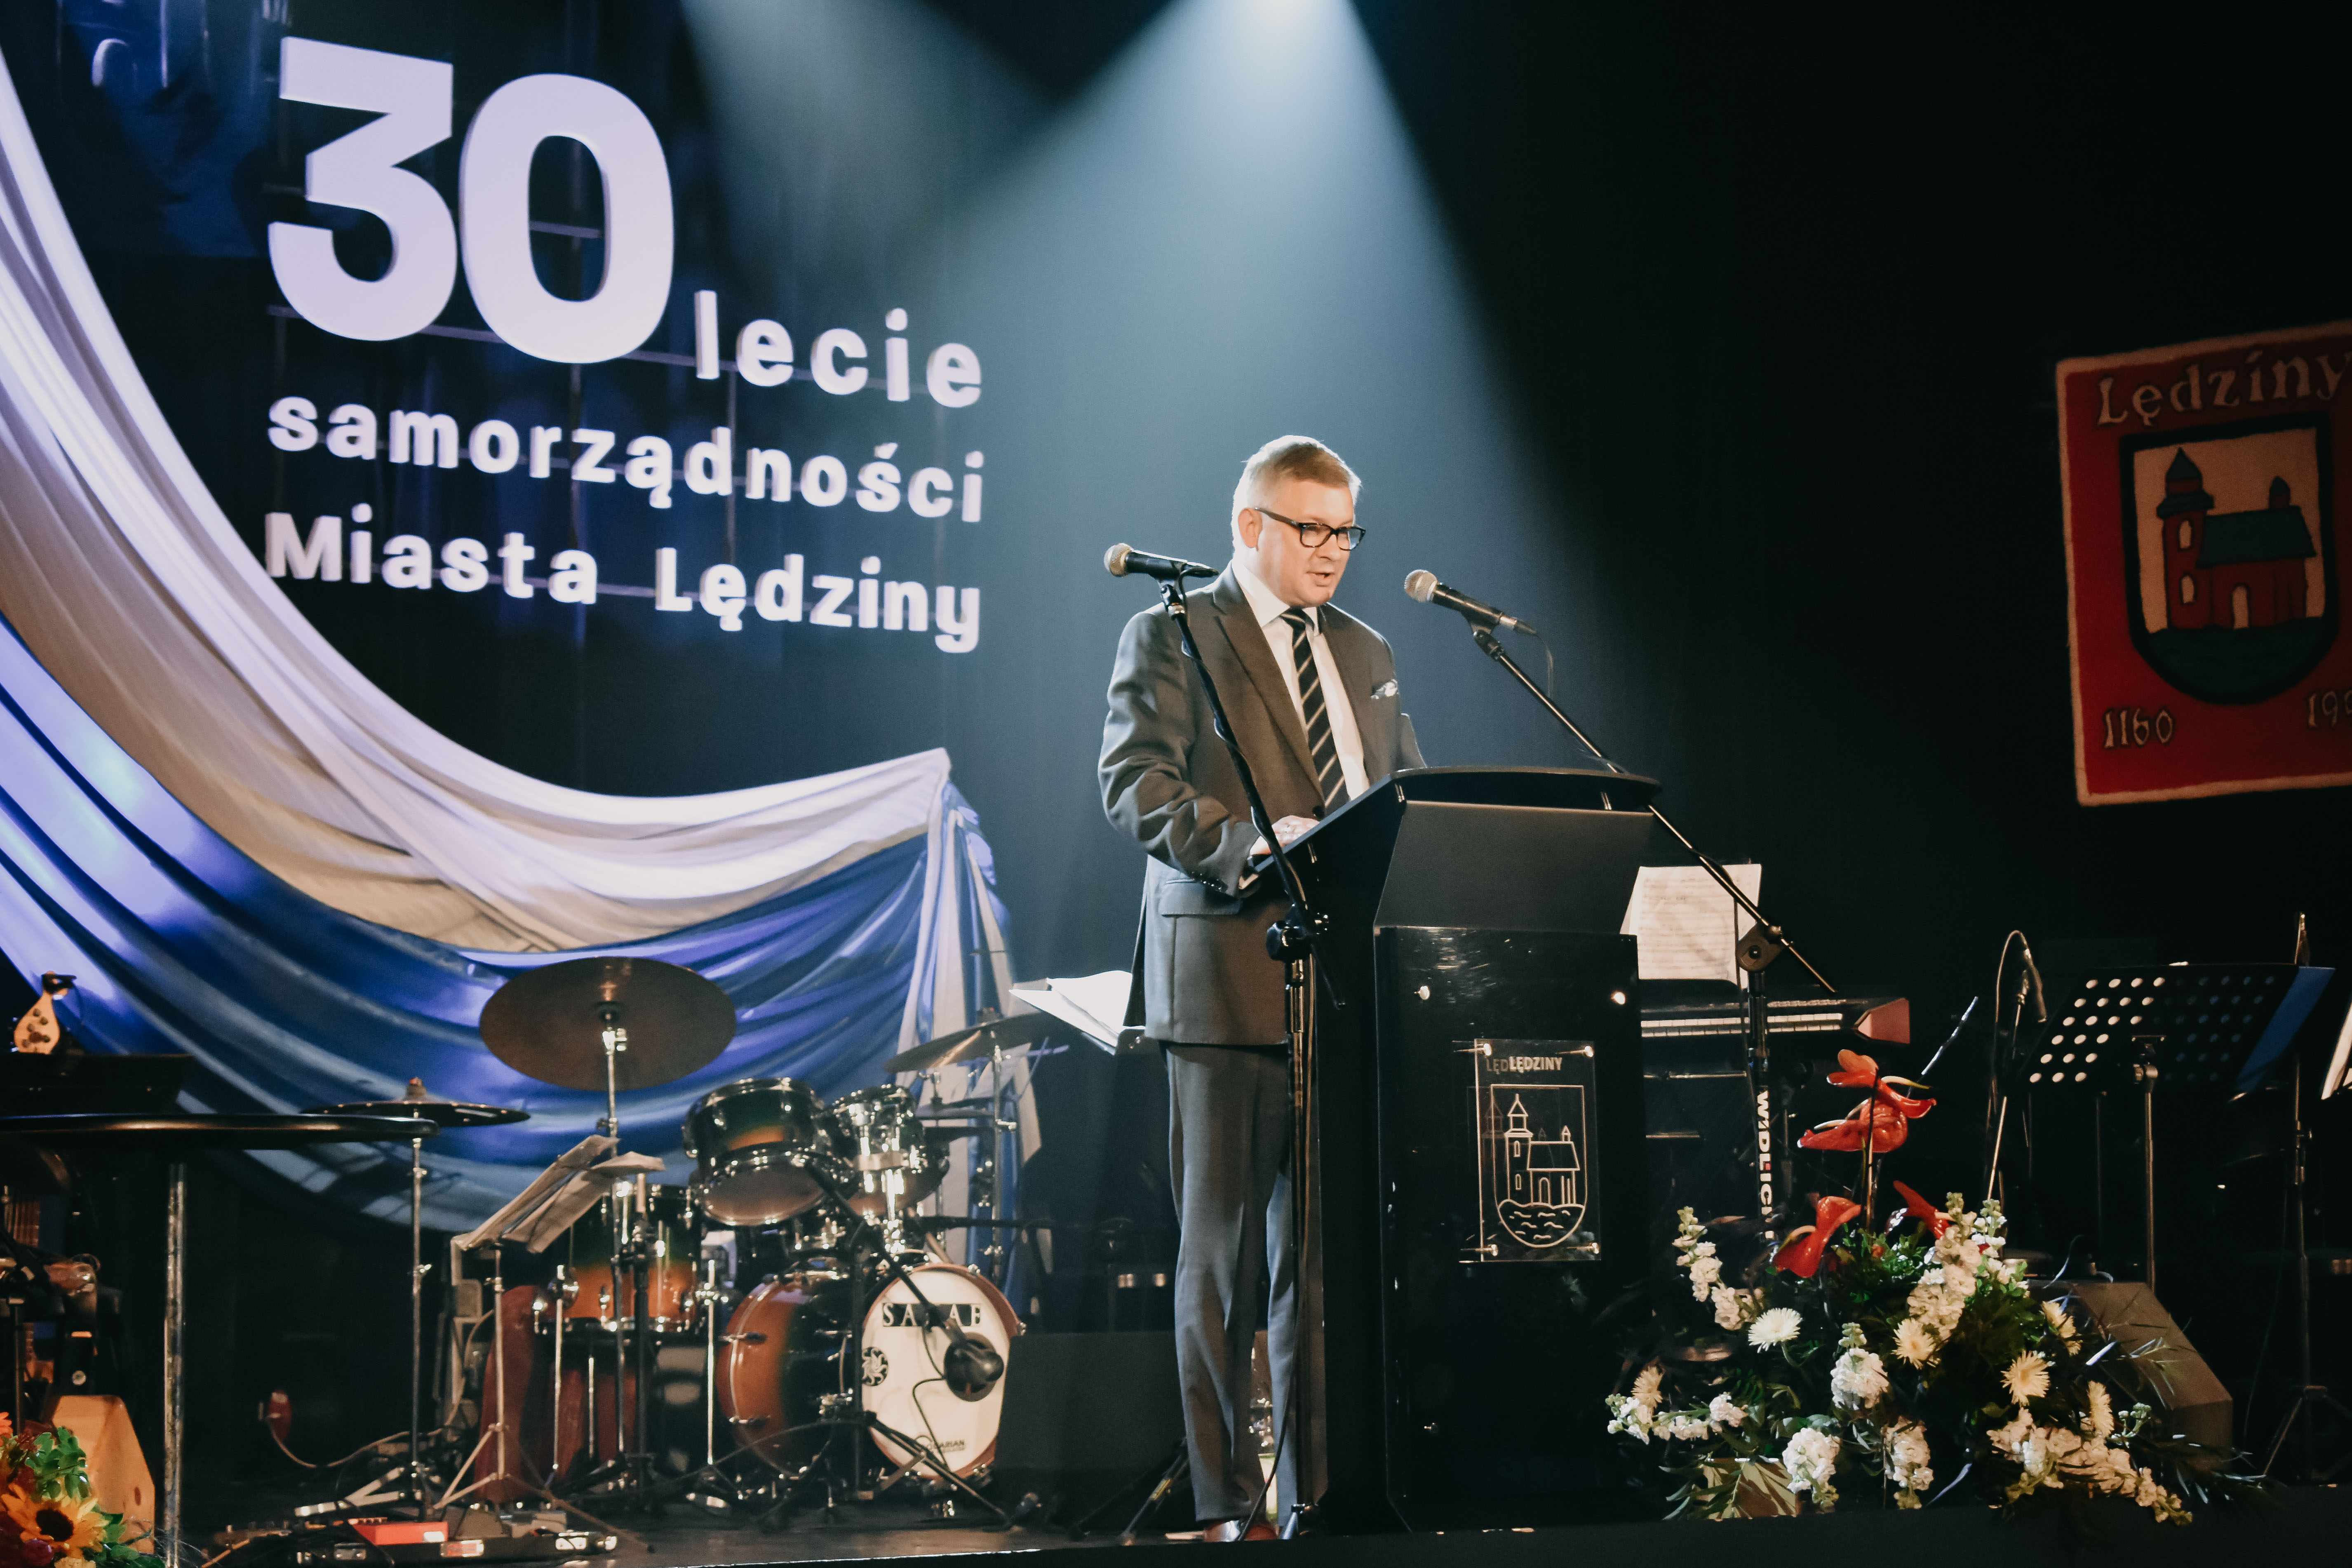 30-lecie samorządności Miasta Lędziny